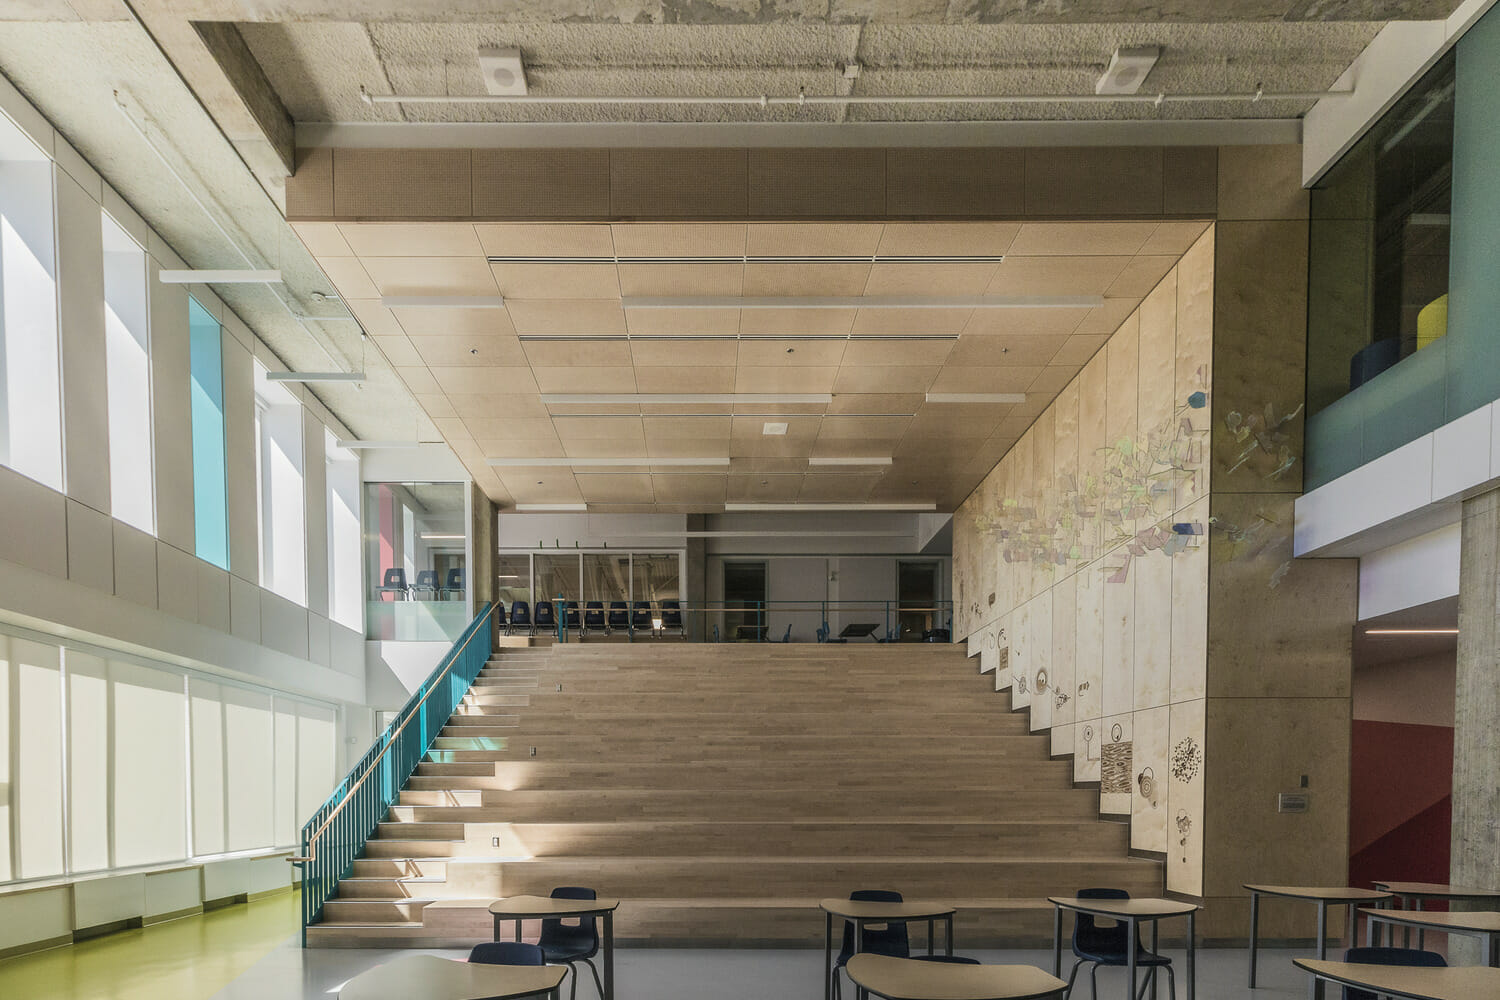 Un bâtiment scolaire avec des escaliers et des tables.